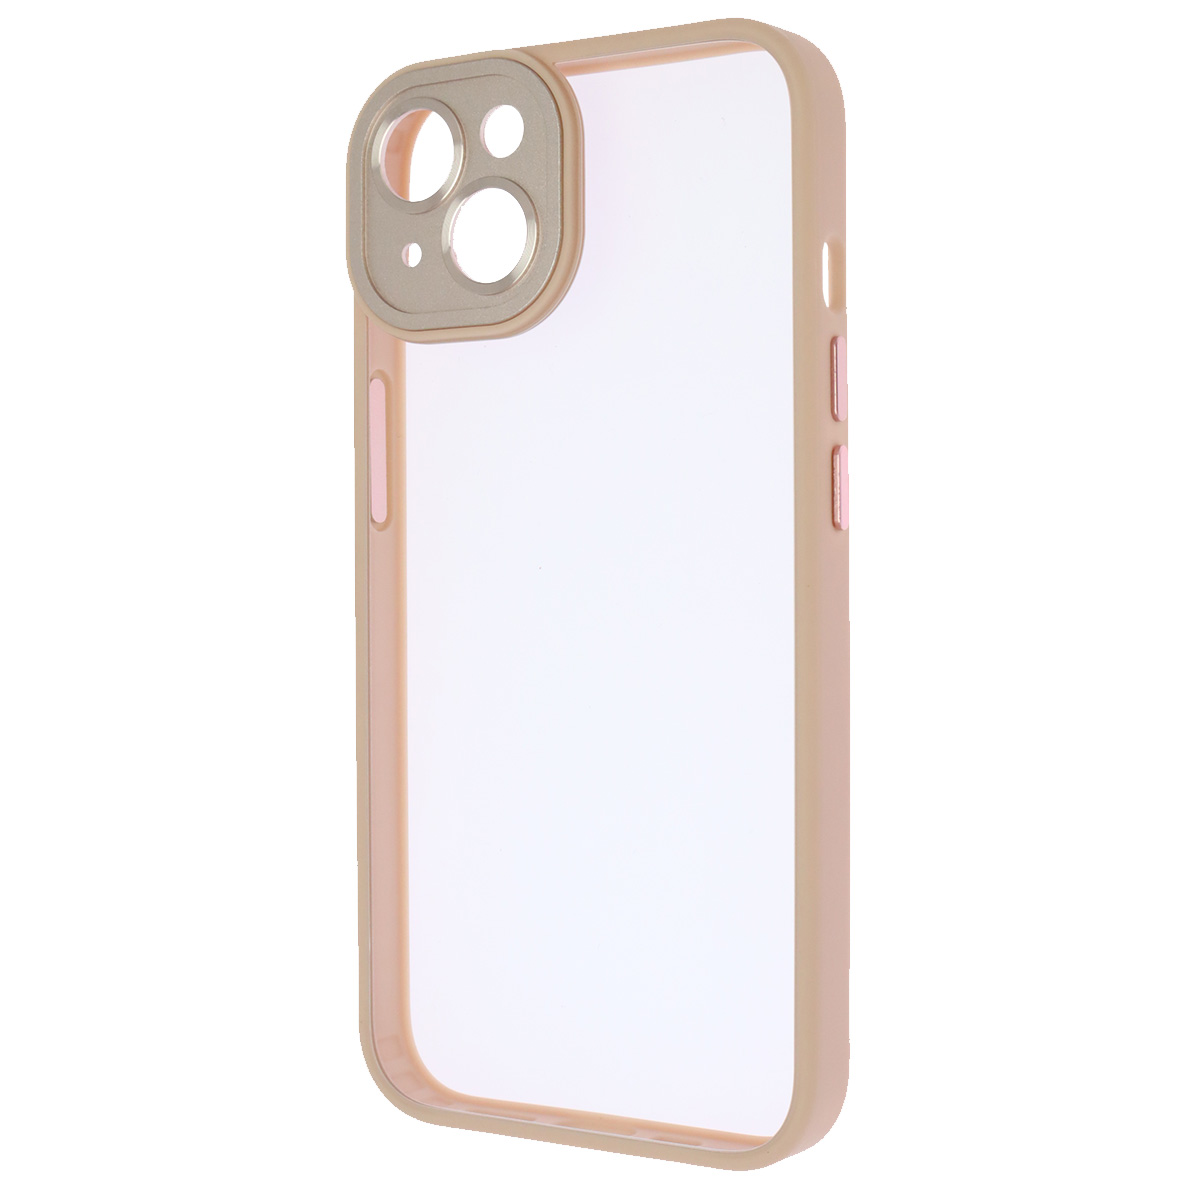 Чехол накладка для APPLE iPhone 13, защита камеры, силикон, прозрачный, цвет окантовки розовый песок